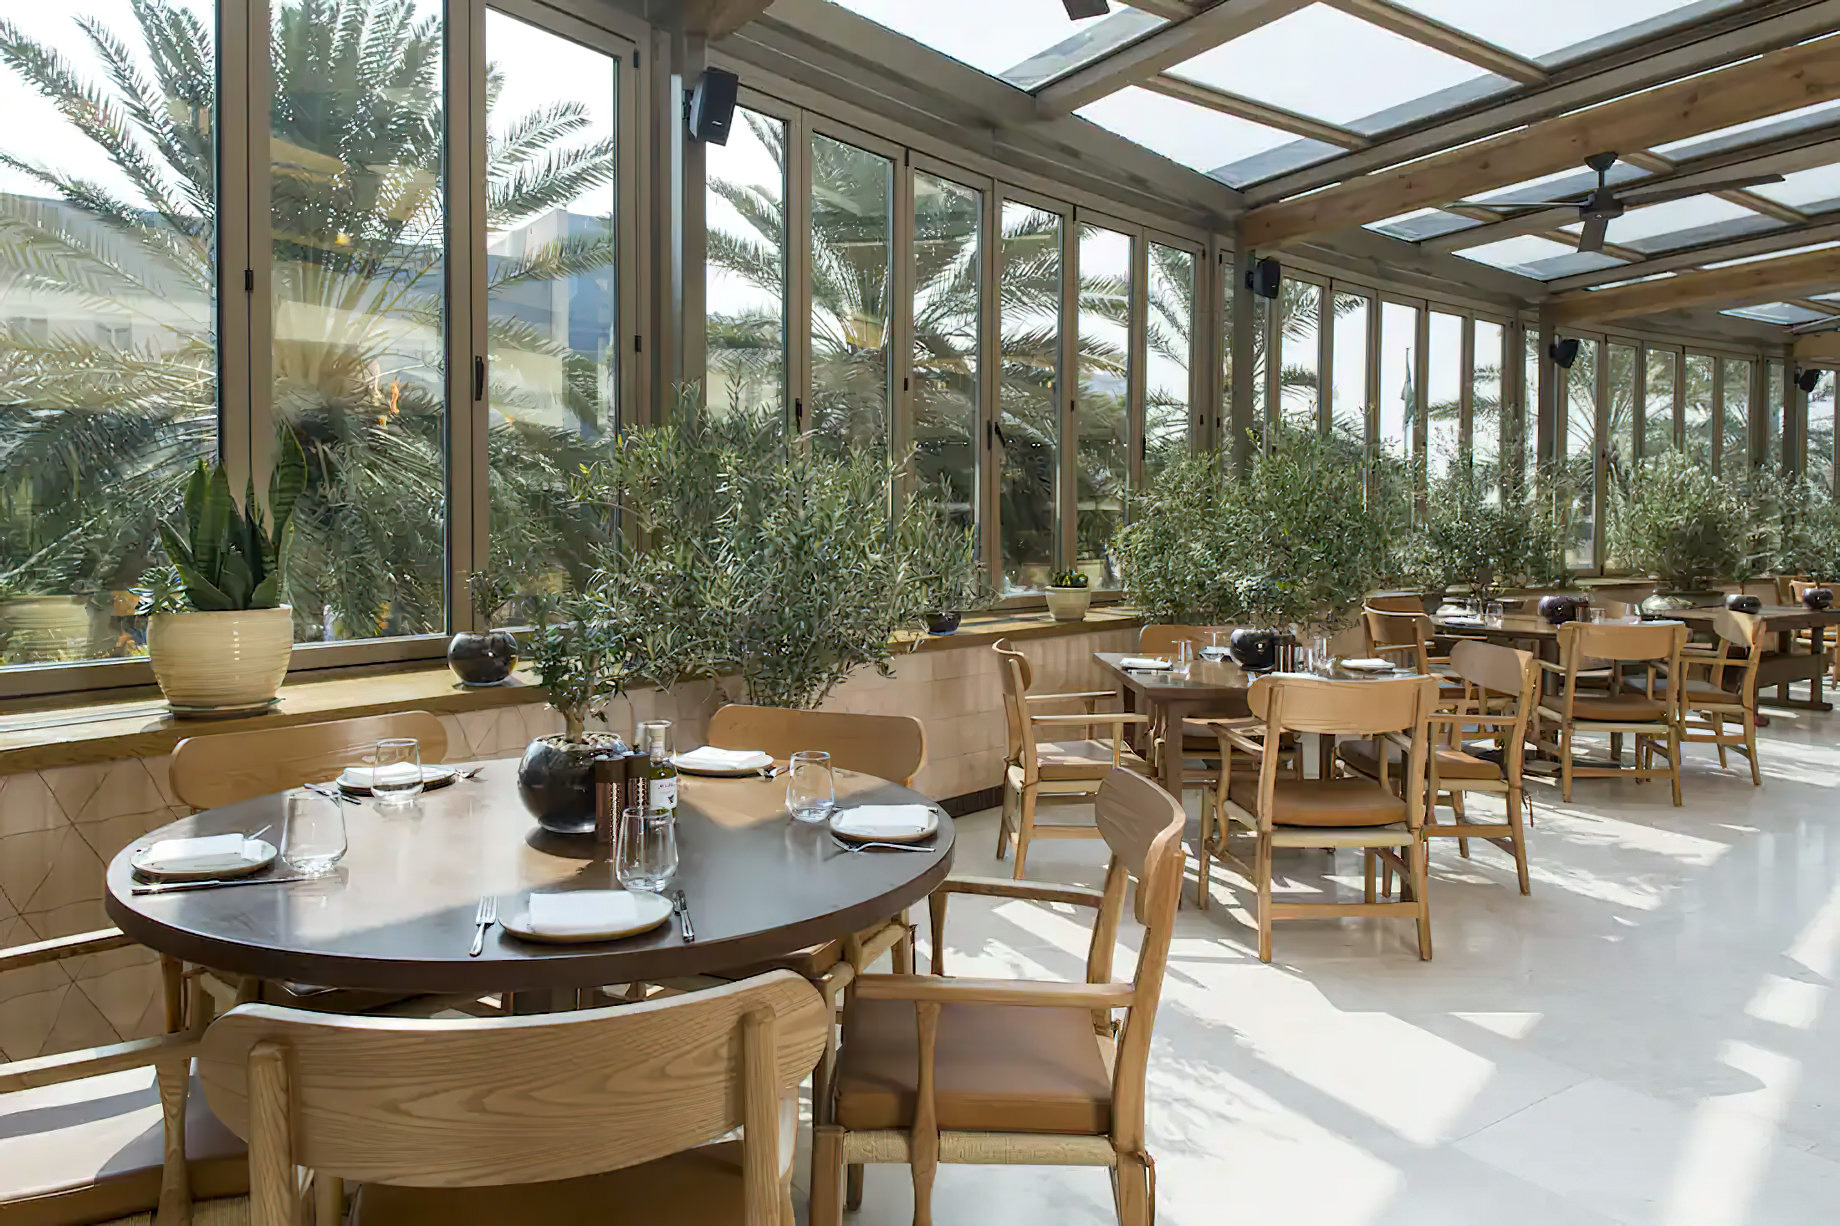 Al Faisaliah Hotel – Riyadh, Saudi Arabia – Meraki Restaurant Table Setting